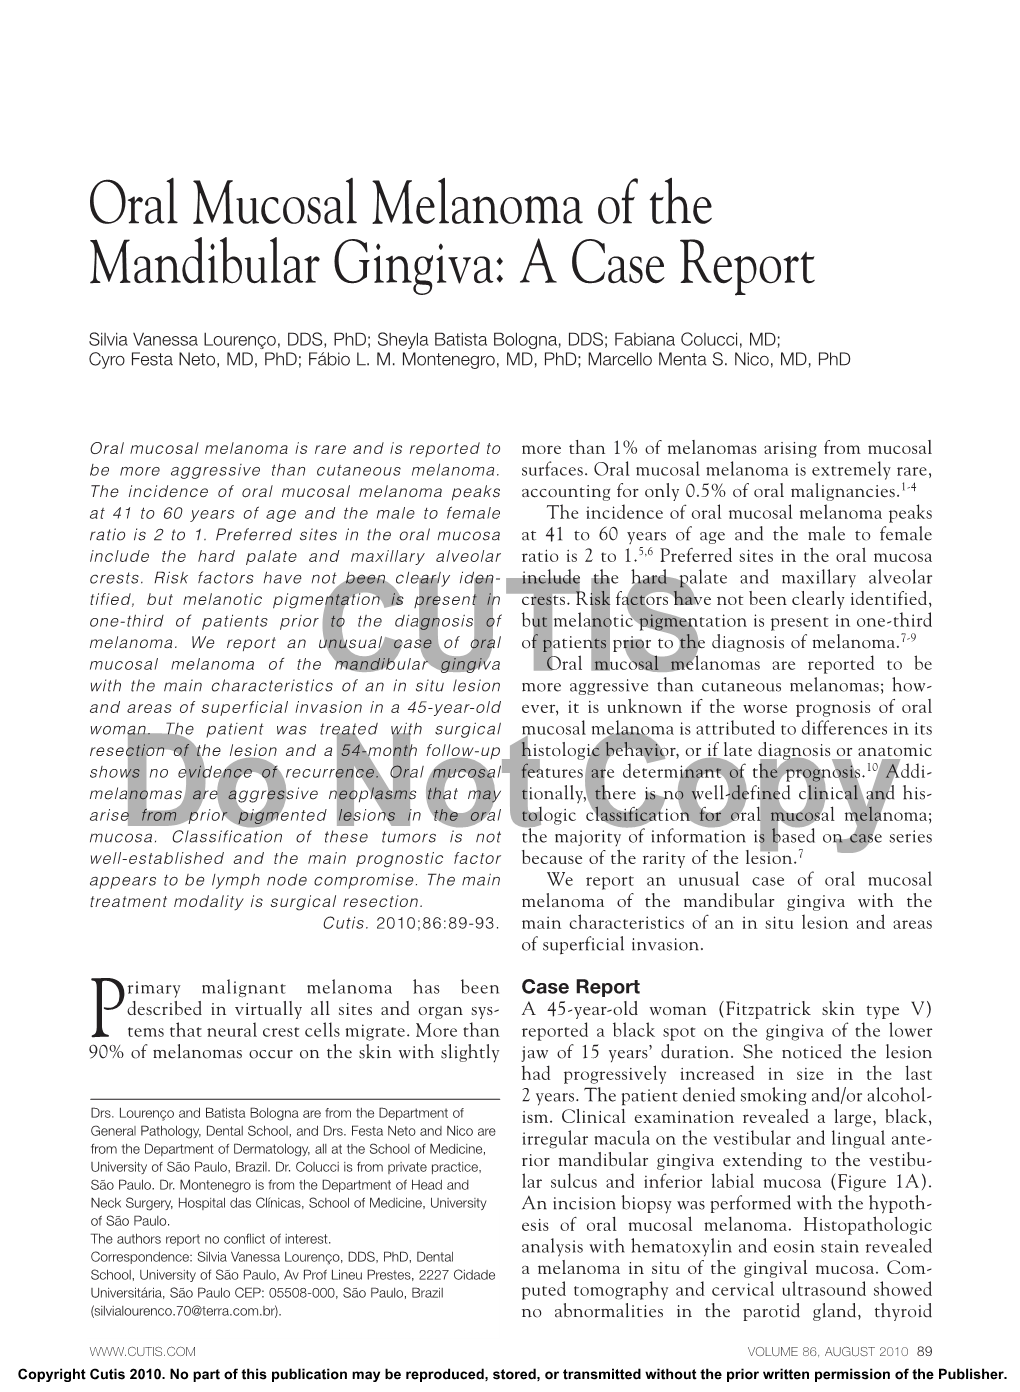 Oral Mucosal Melanoma of the Mandibular Gingiva: a Case Report